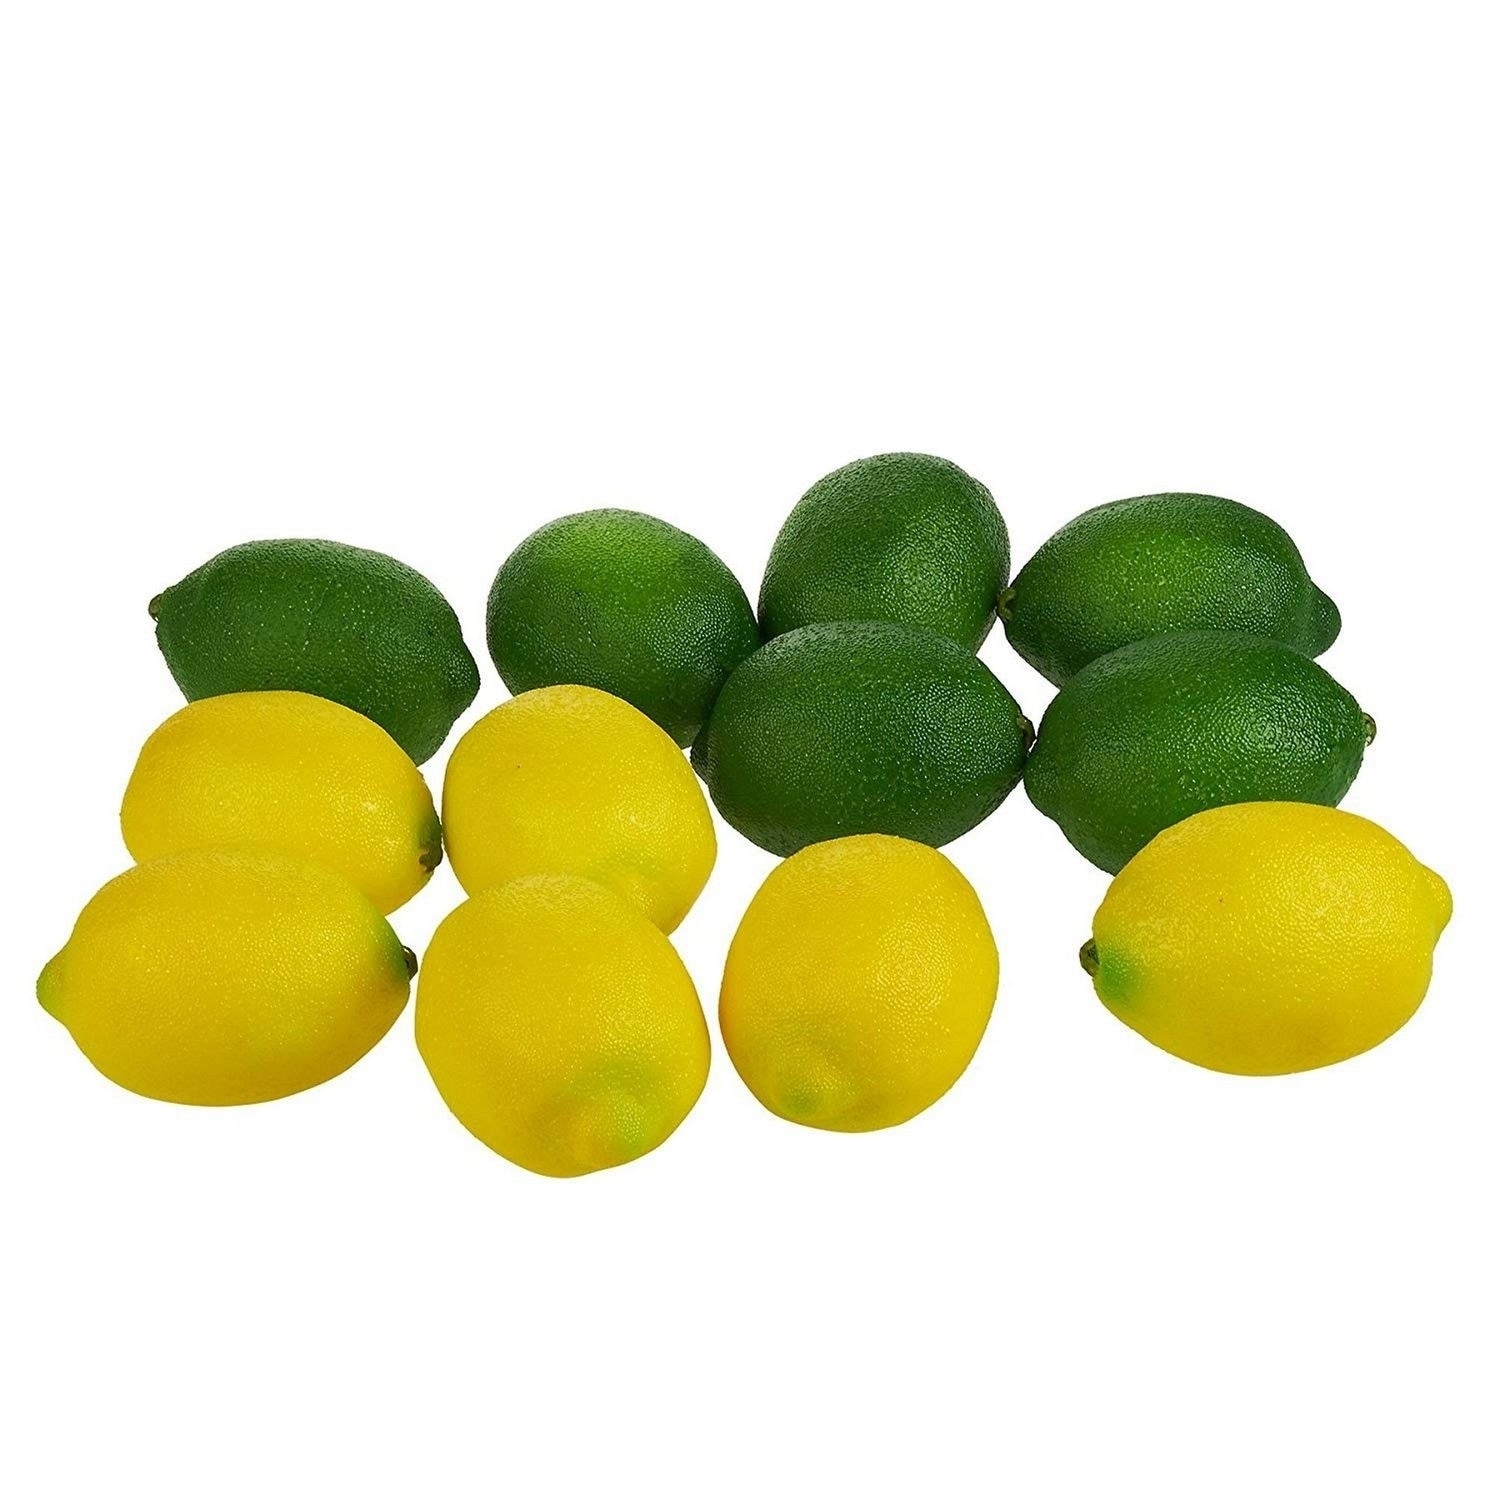 6/8/12 x Lemon Faux Lemons Artificial Fruit Fake Theater Prop Staging Home Decor 